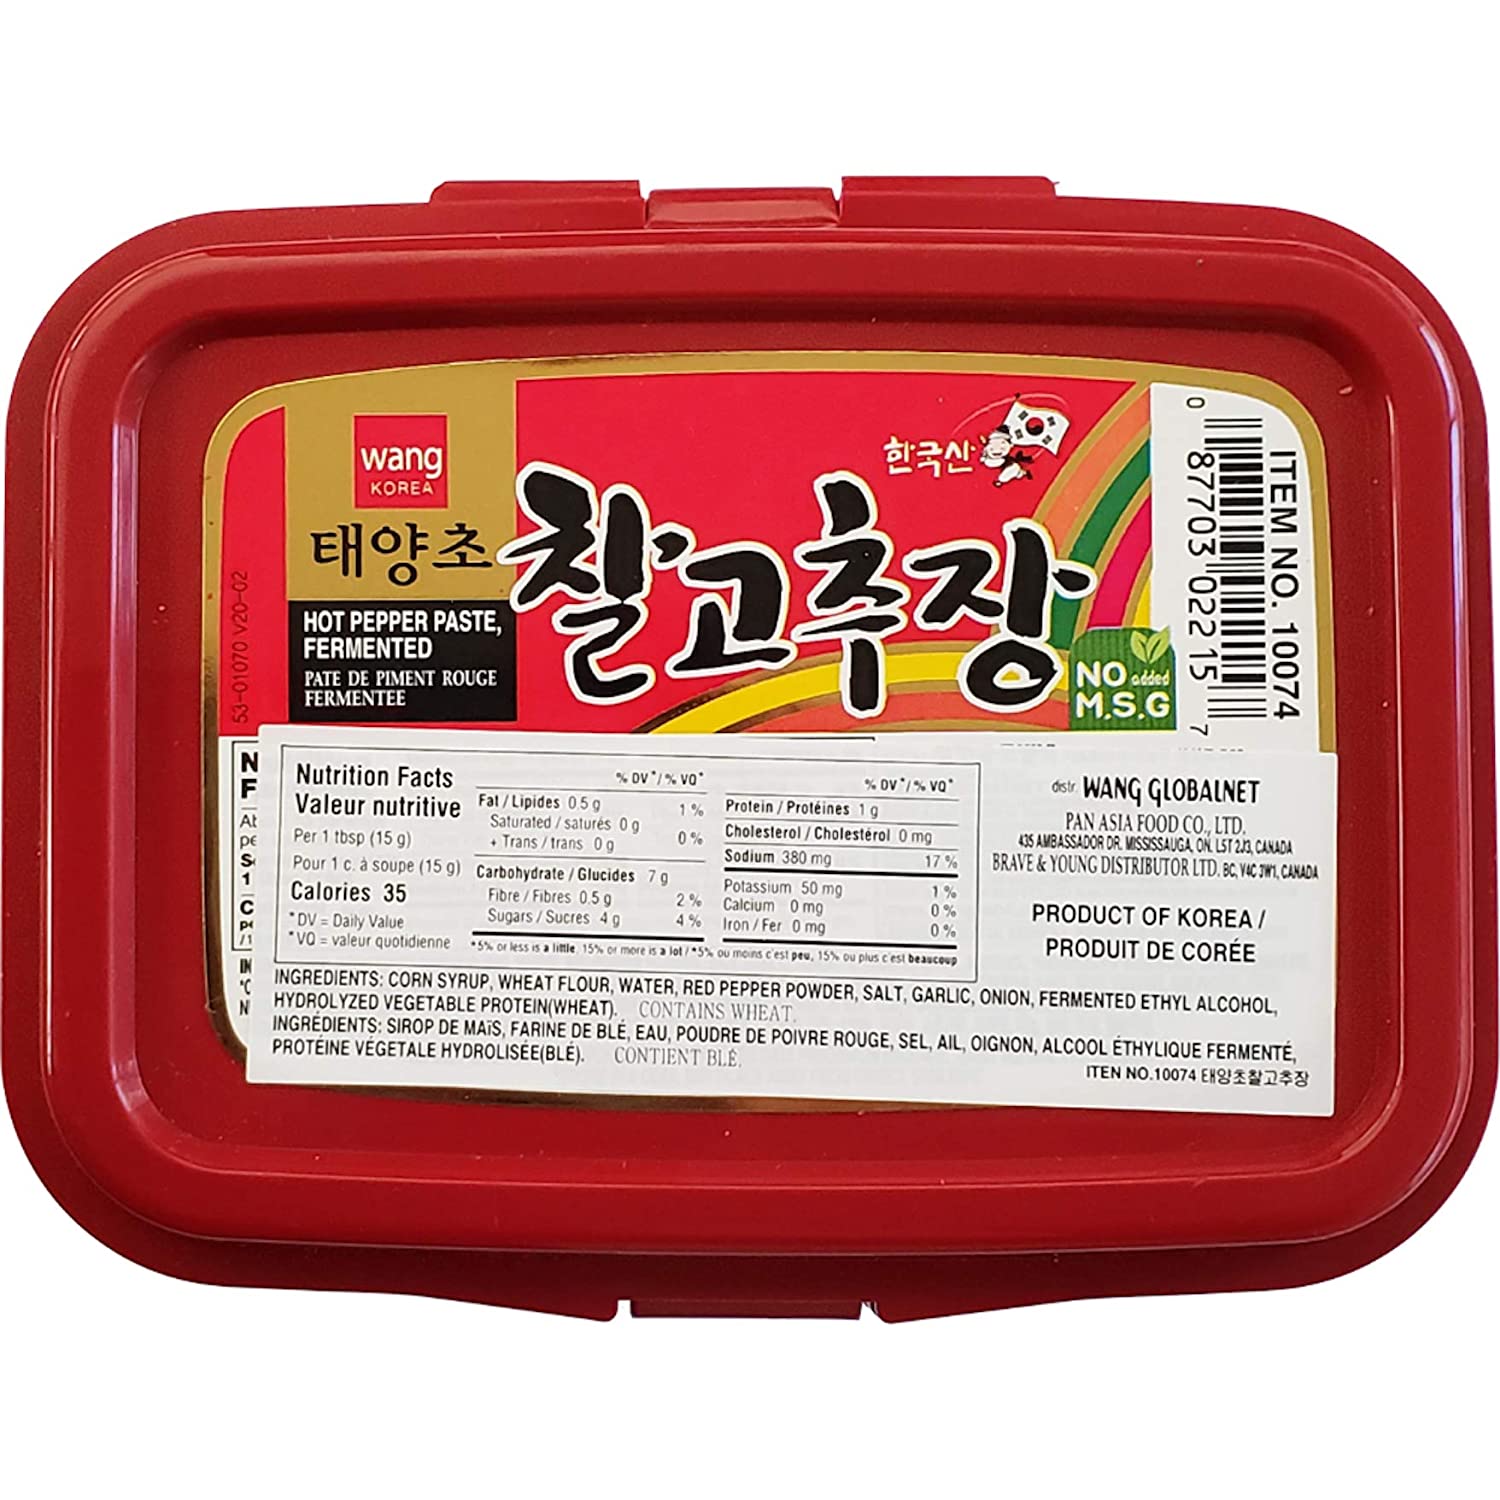 Wang Korea Hot Pepper Paste, Fermentado - 500g/17.6oz